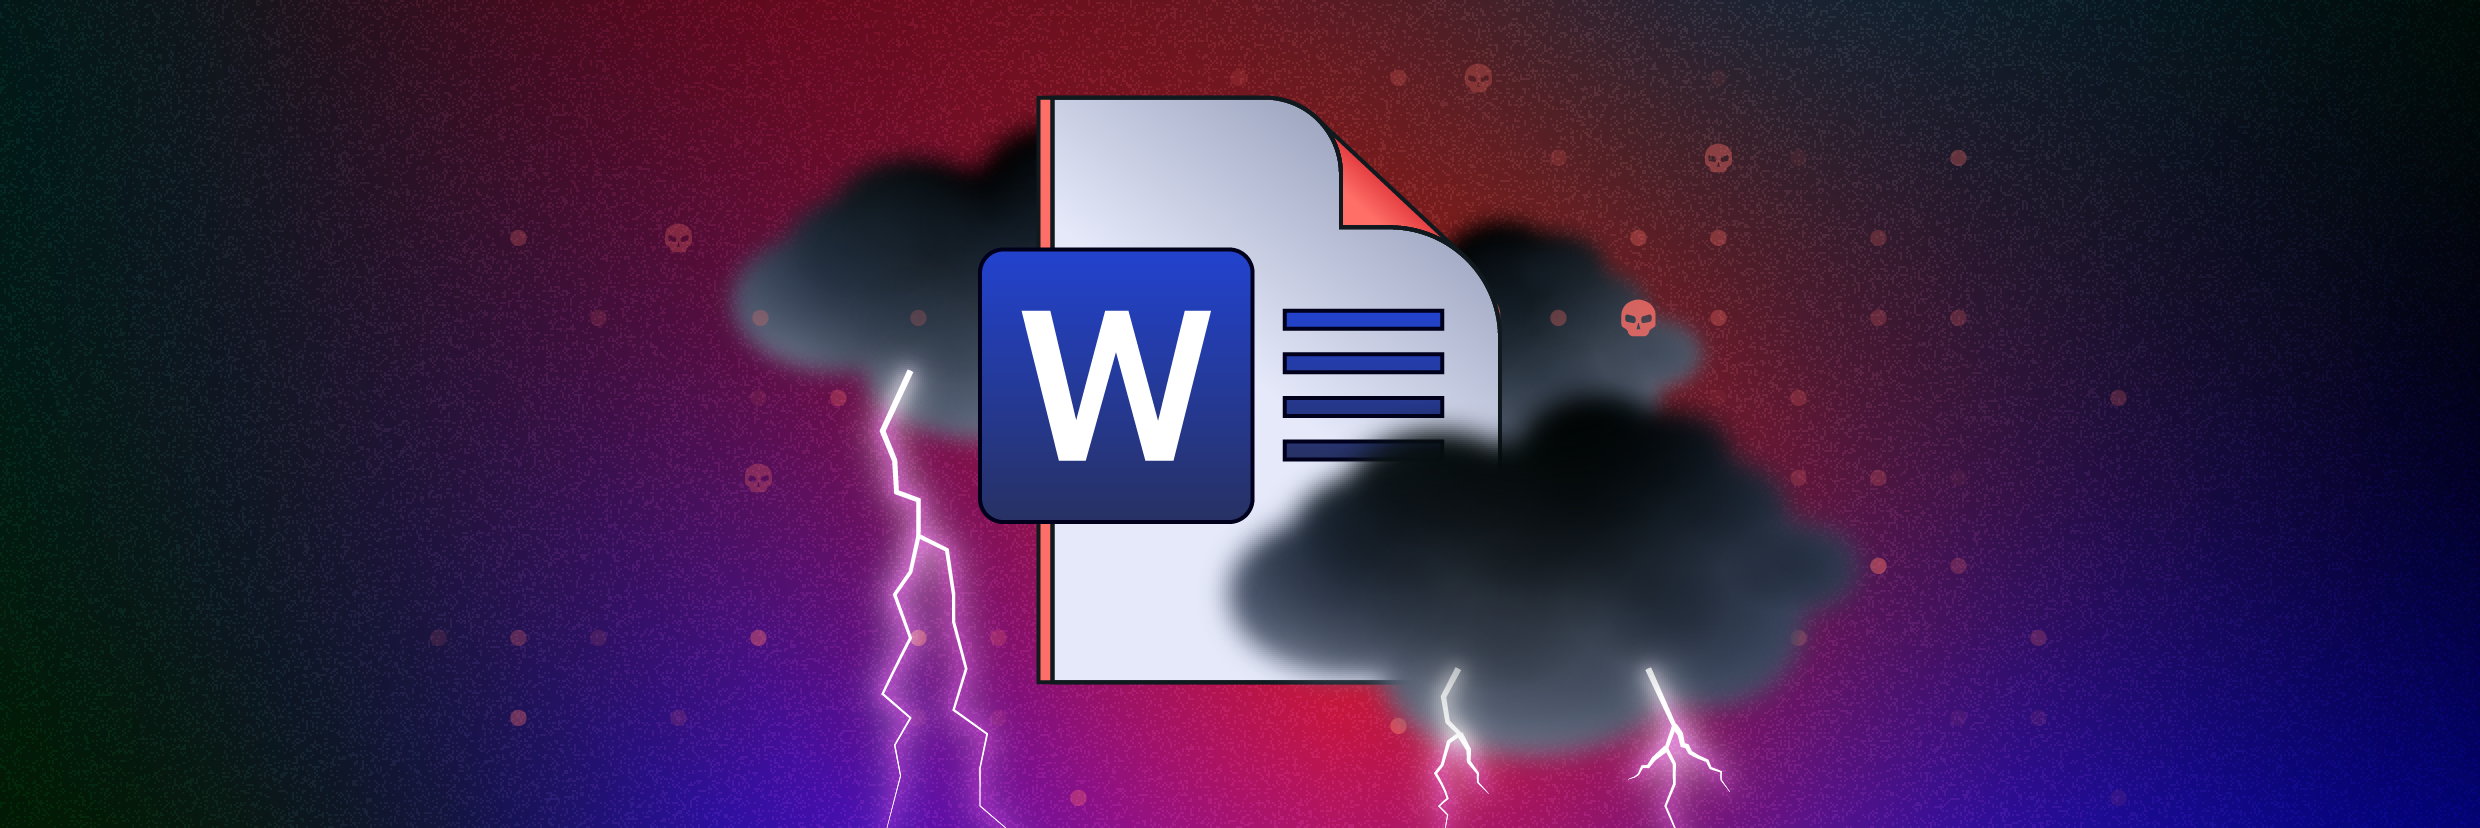 Microsoft-Word-Dokument, umgeben von Gewitterwolken